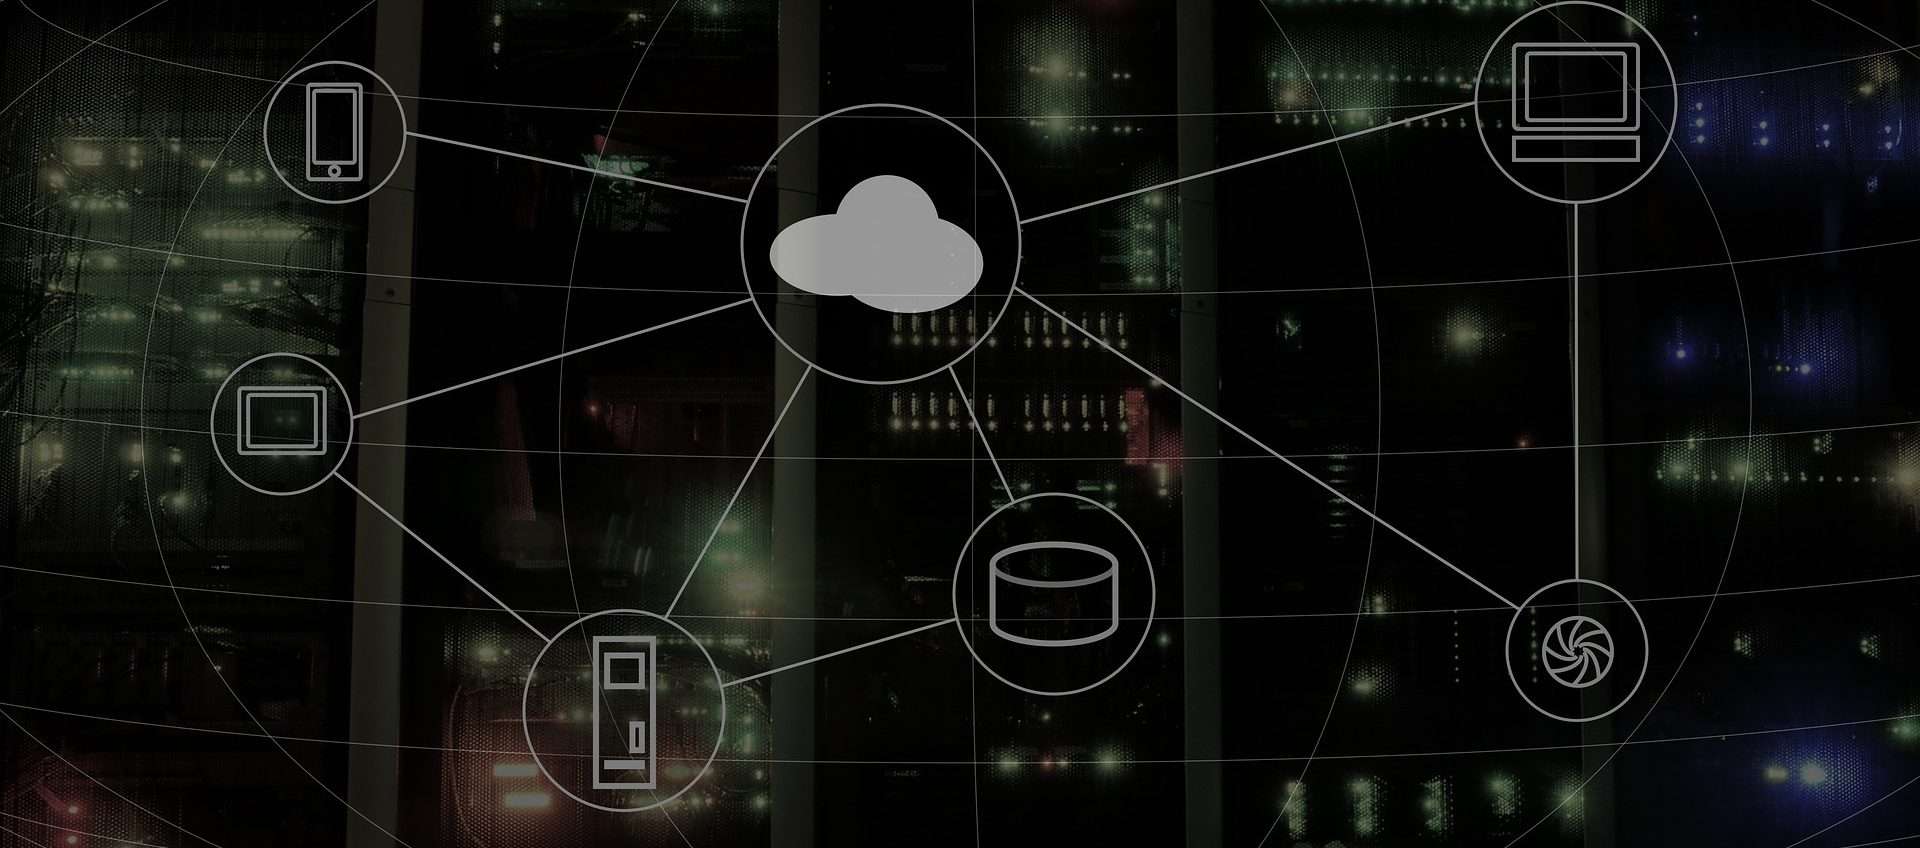 Cloud storage a vita o in abbonamento? Internxt li offre entrambi con ottimi prezzi